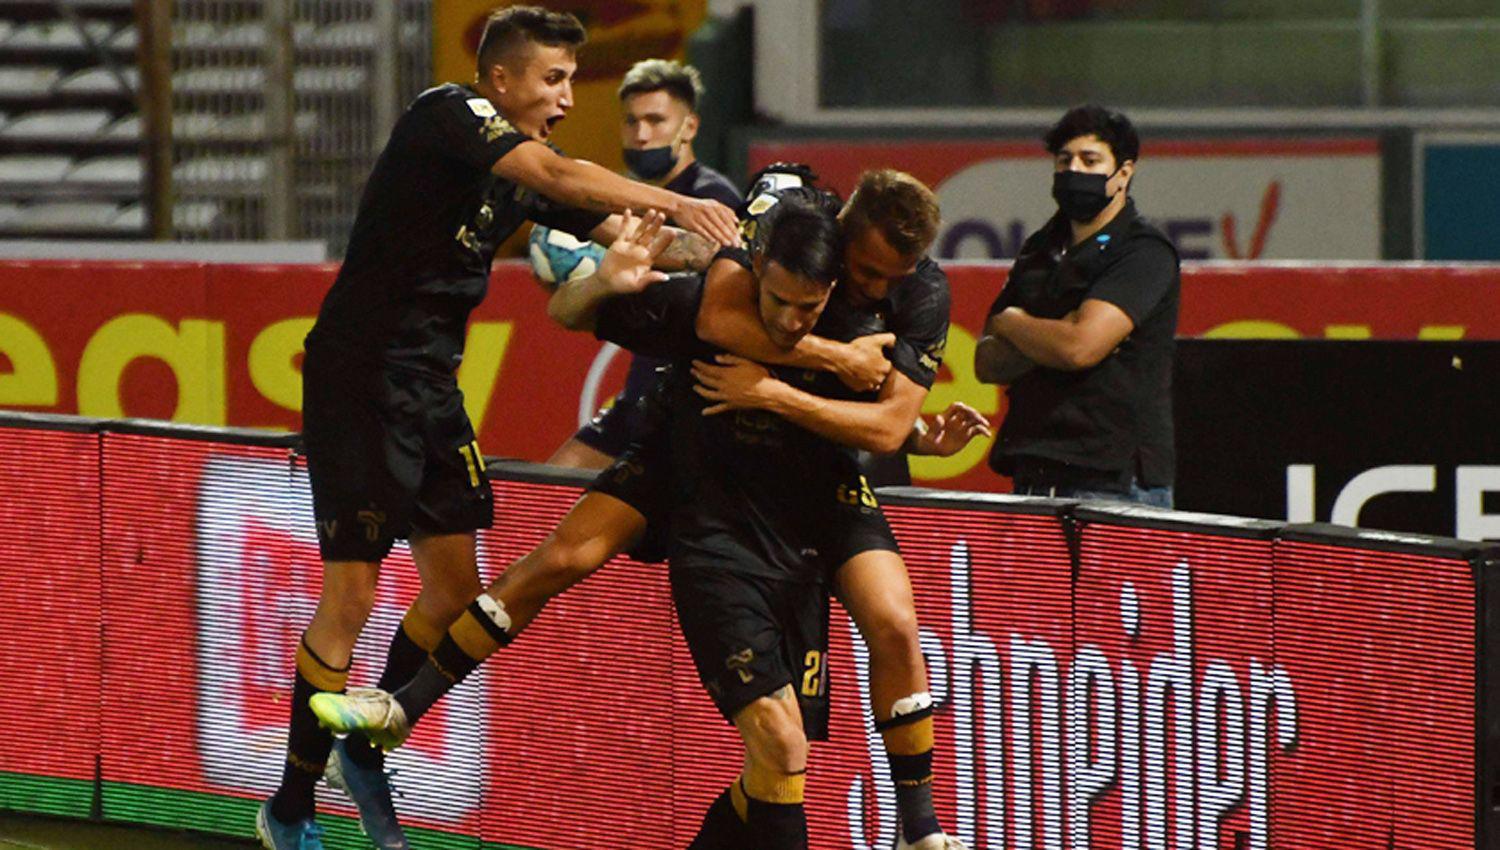 Los jugadores de Talleres festejan el gol del empate salvo Carlos Auzqui por su pasado en Lan�s